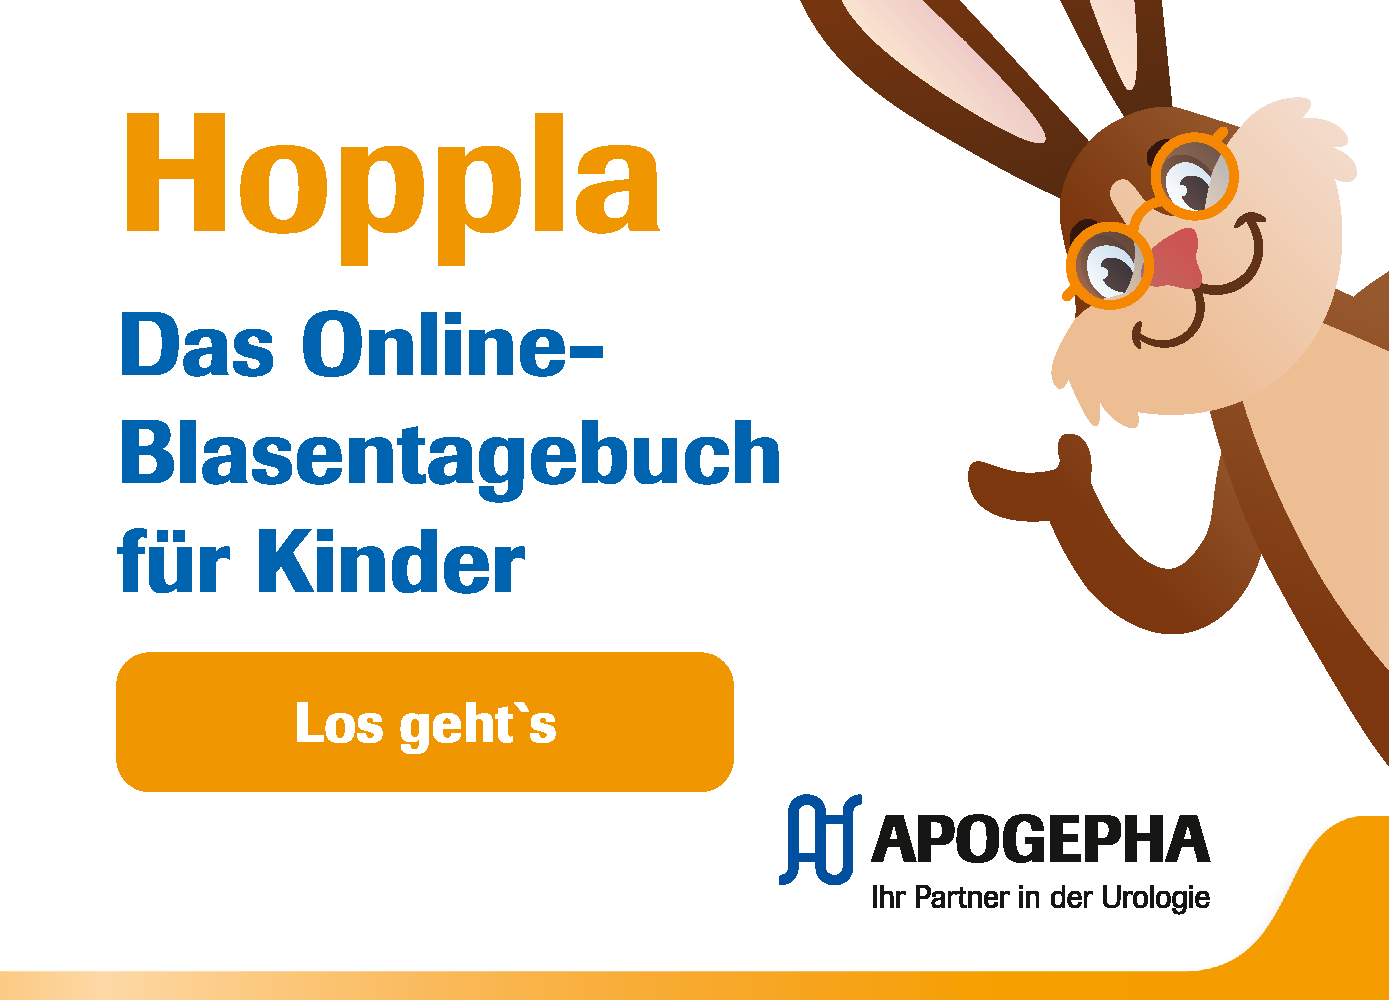 Hoppla - Das Online-Blasentagebuch für Kinder